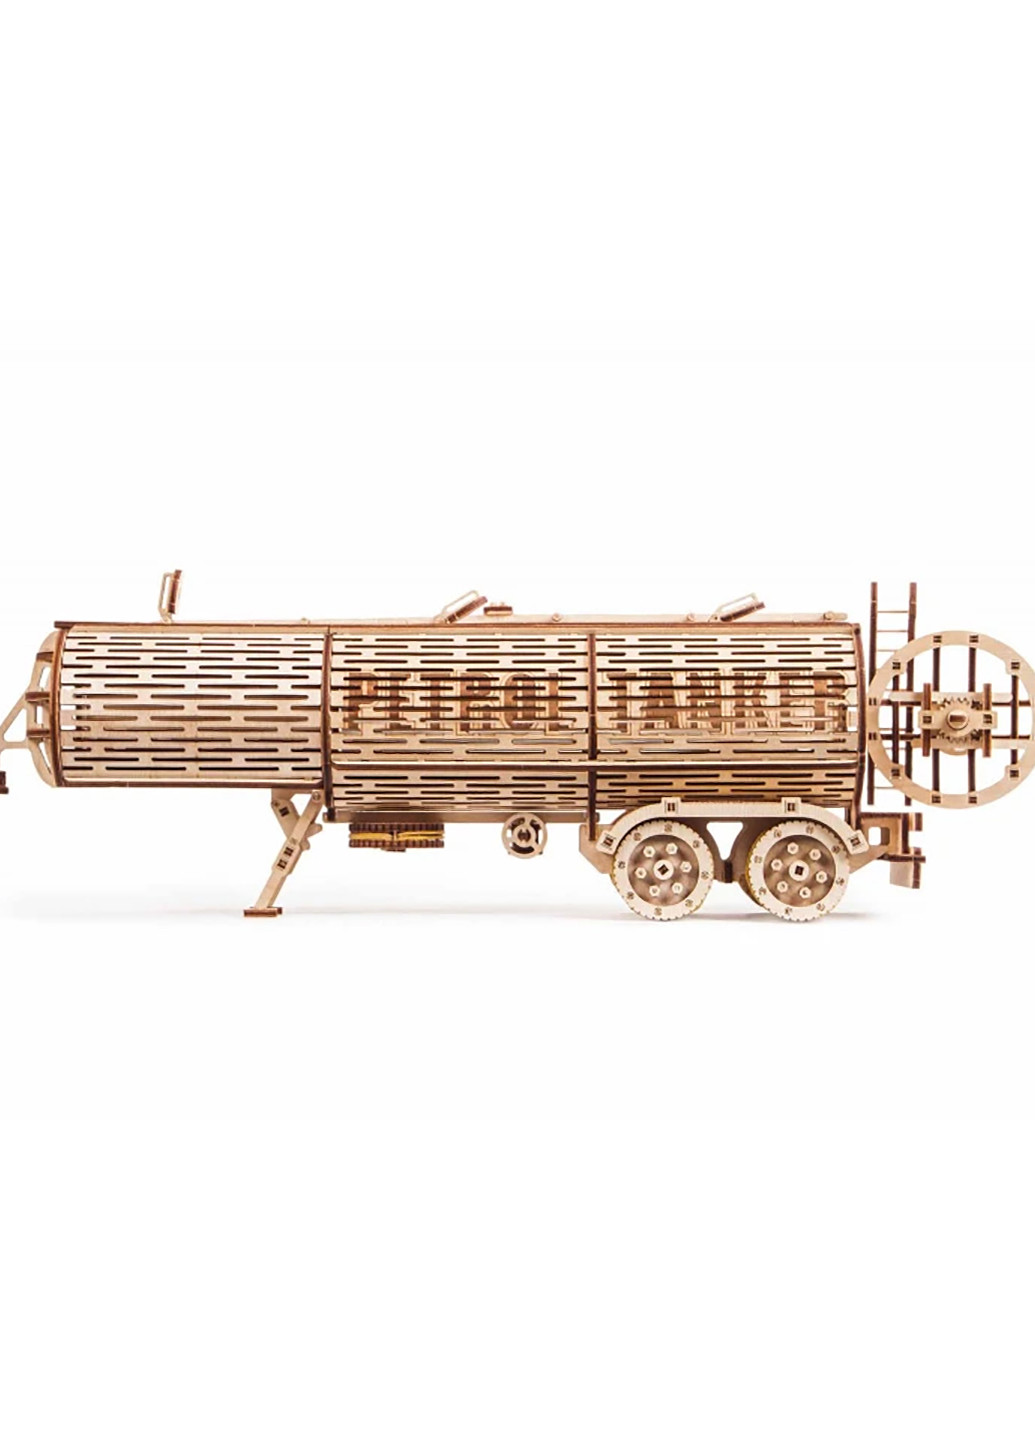 Механически сувенирно-коллекционная модель "Прицеп цистерна" 0 Wood Trick 289 (255335477)